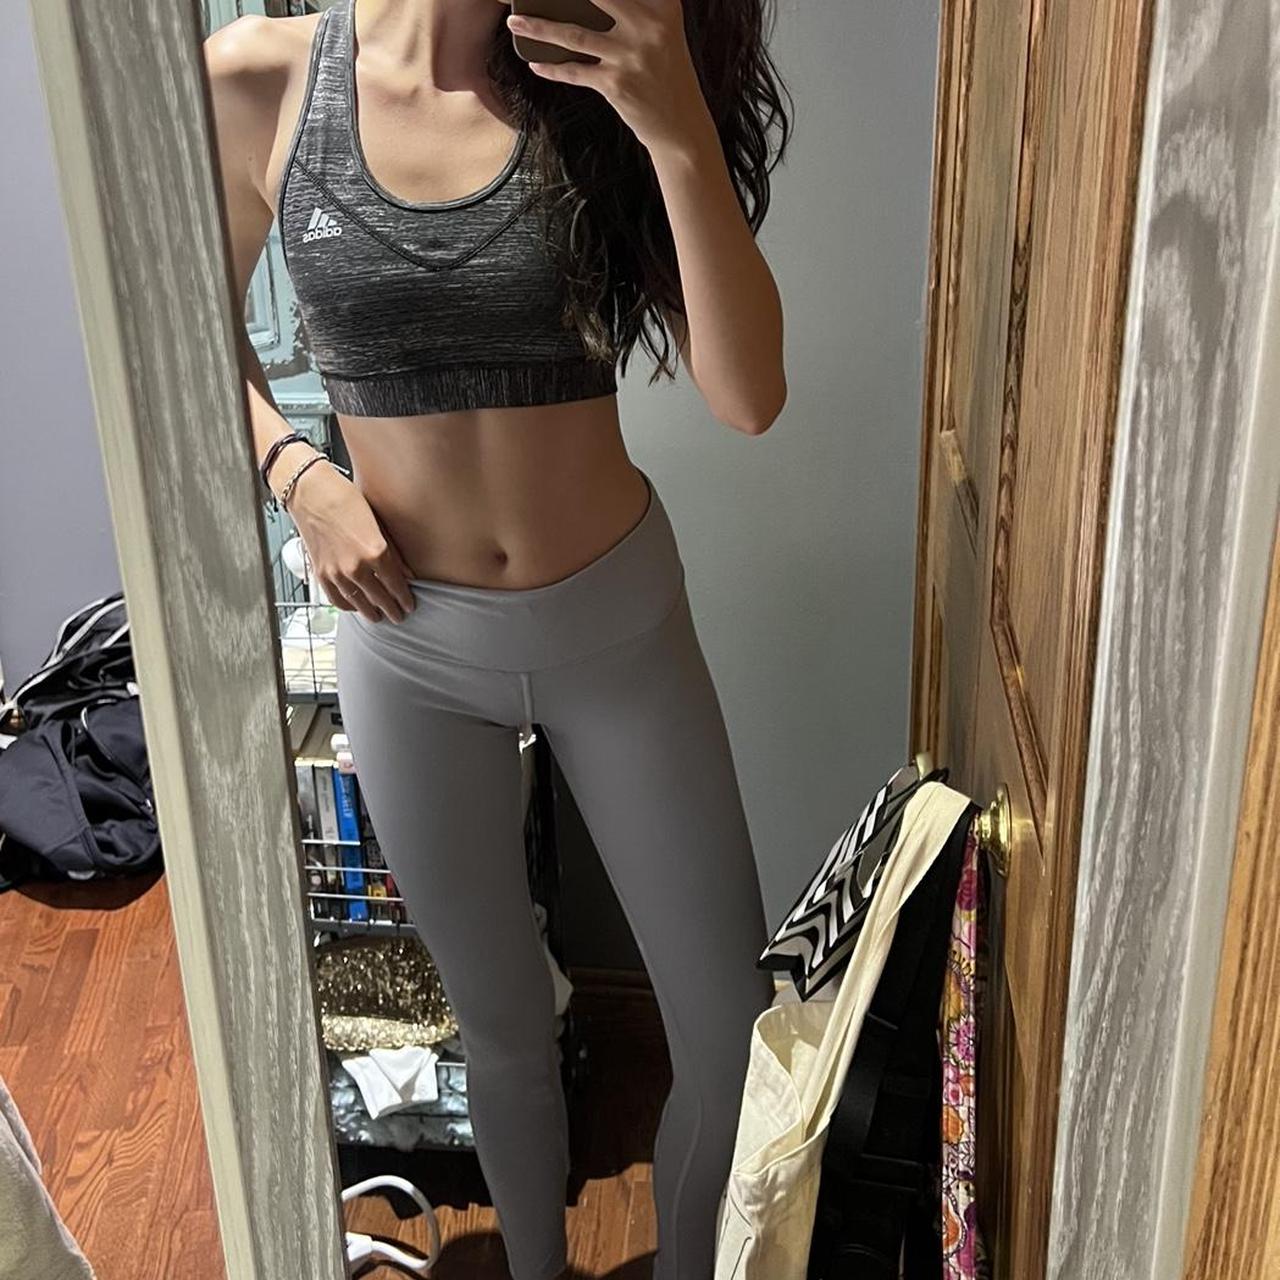 Victoria's Secret Sport knockout grey capri athletic leggings size